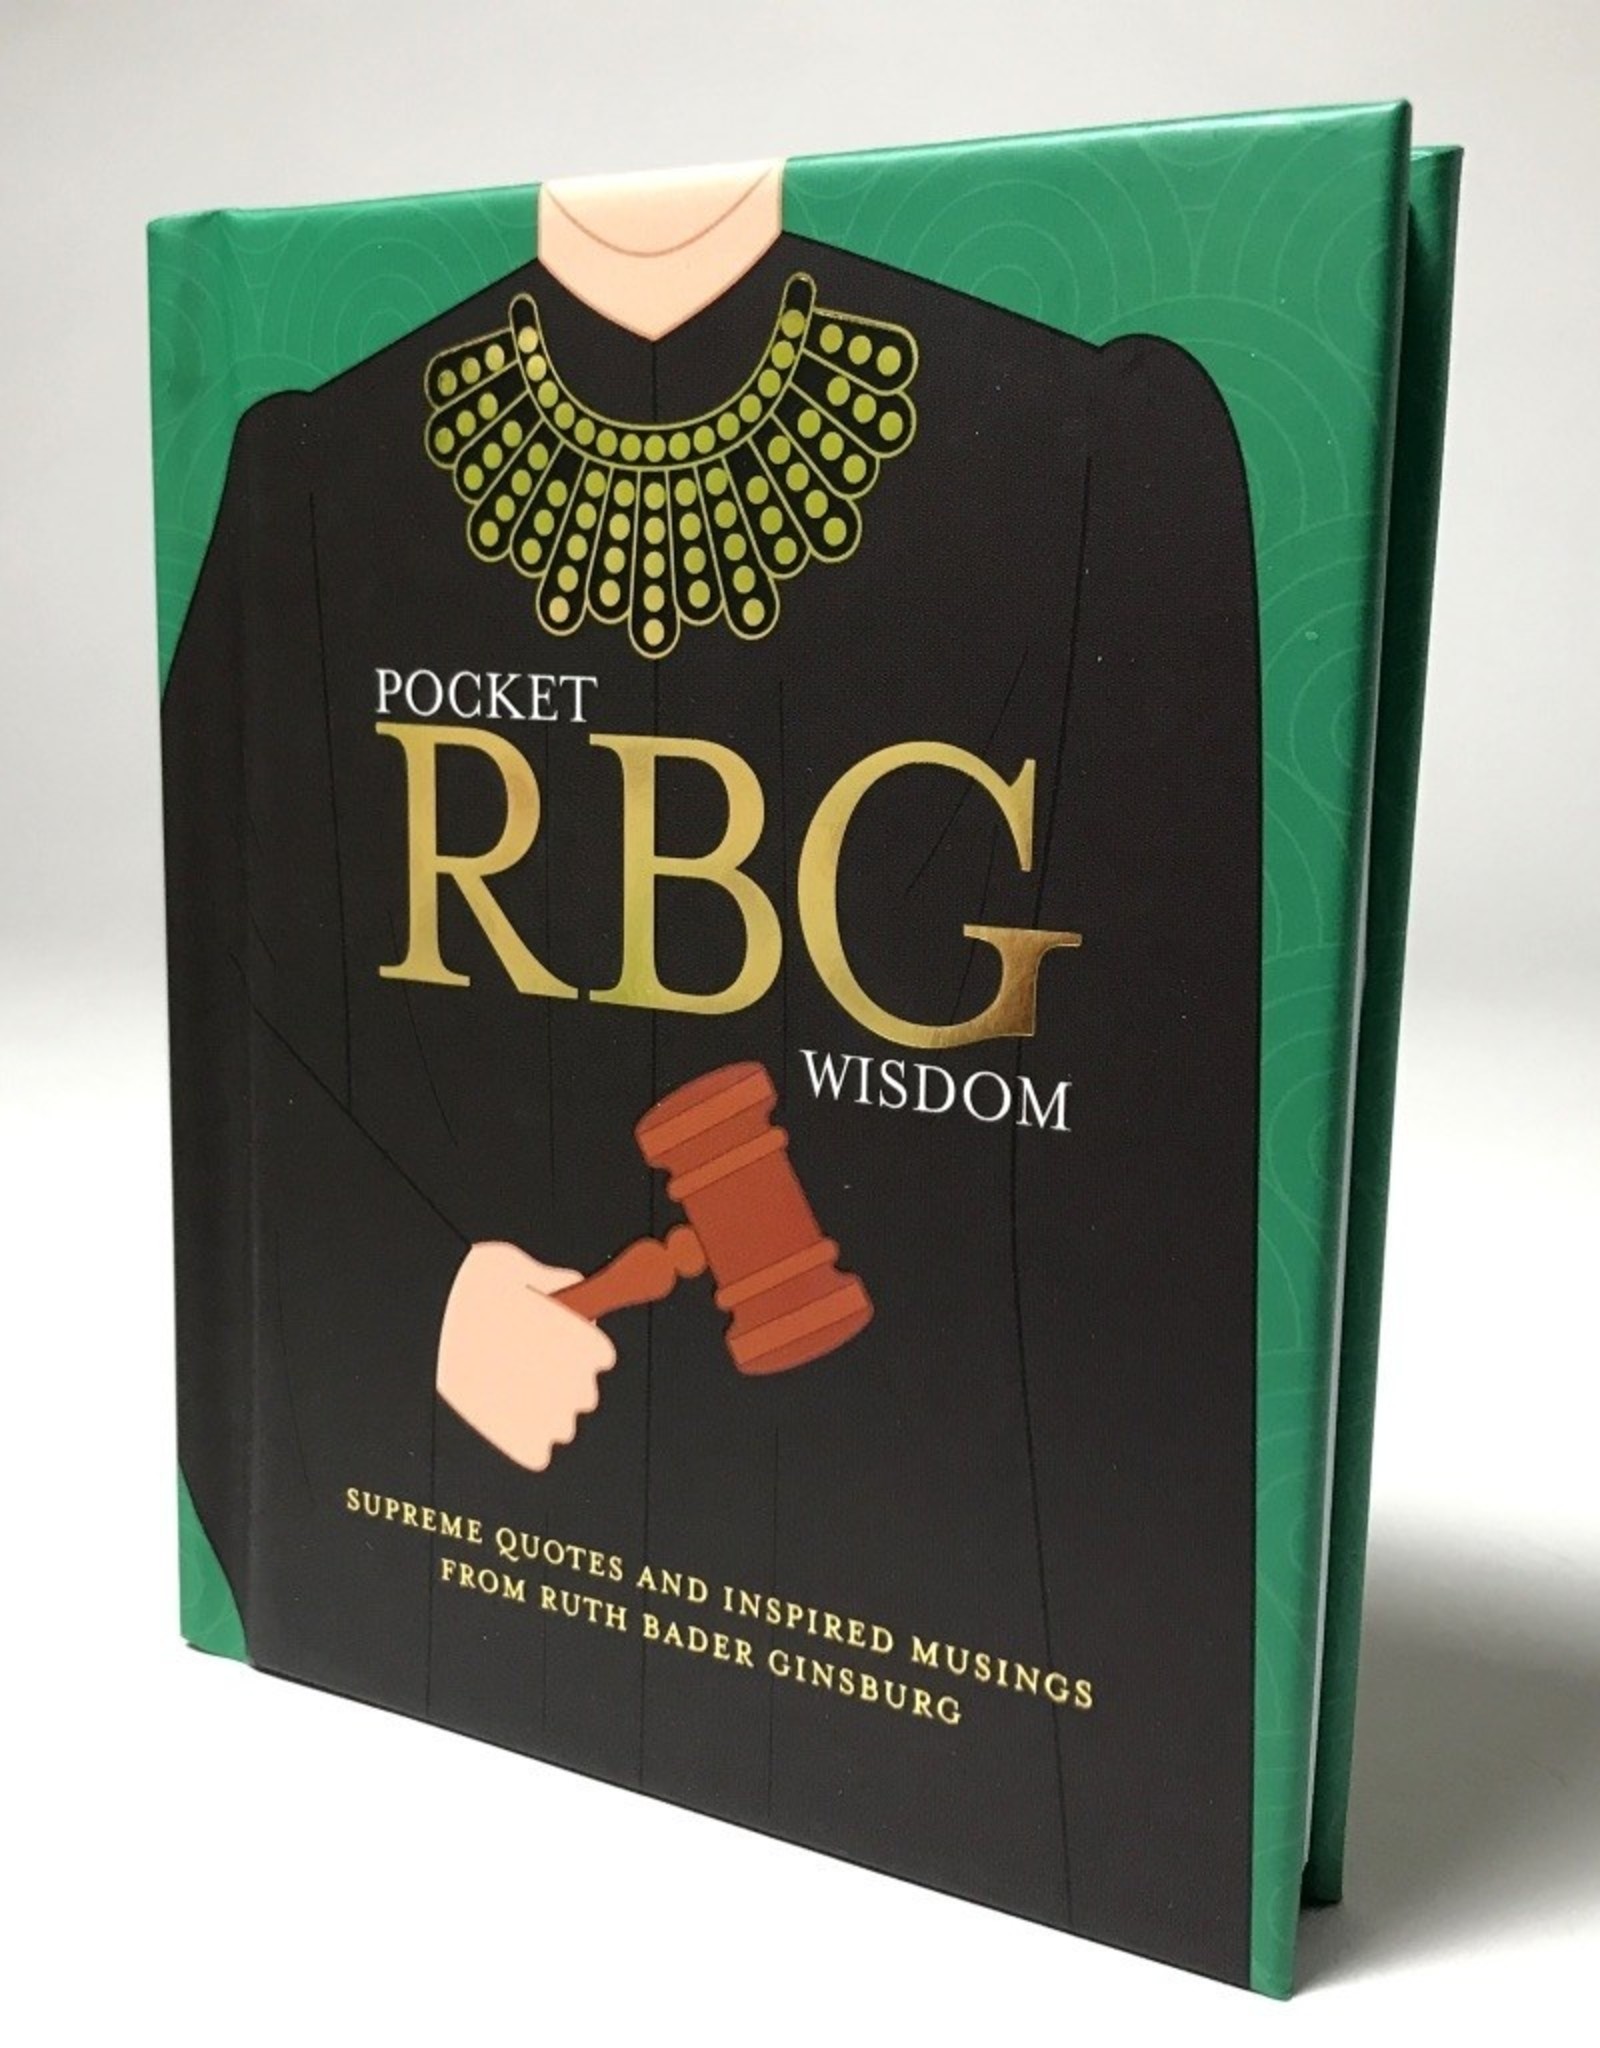 RBG Wisdom Pocket